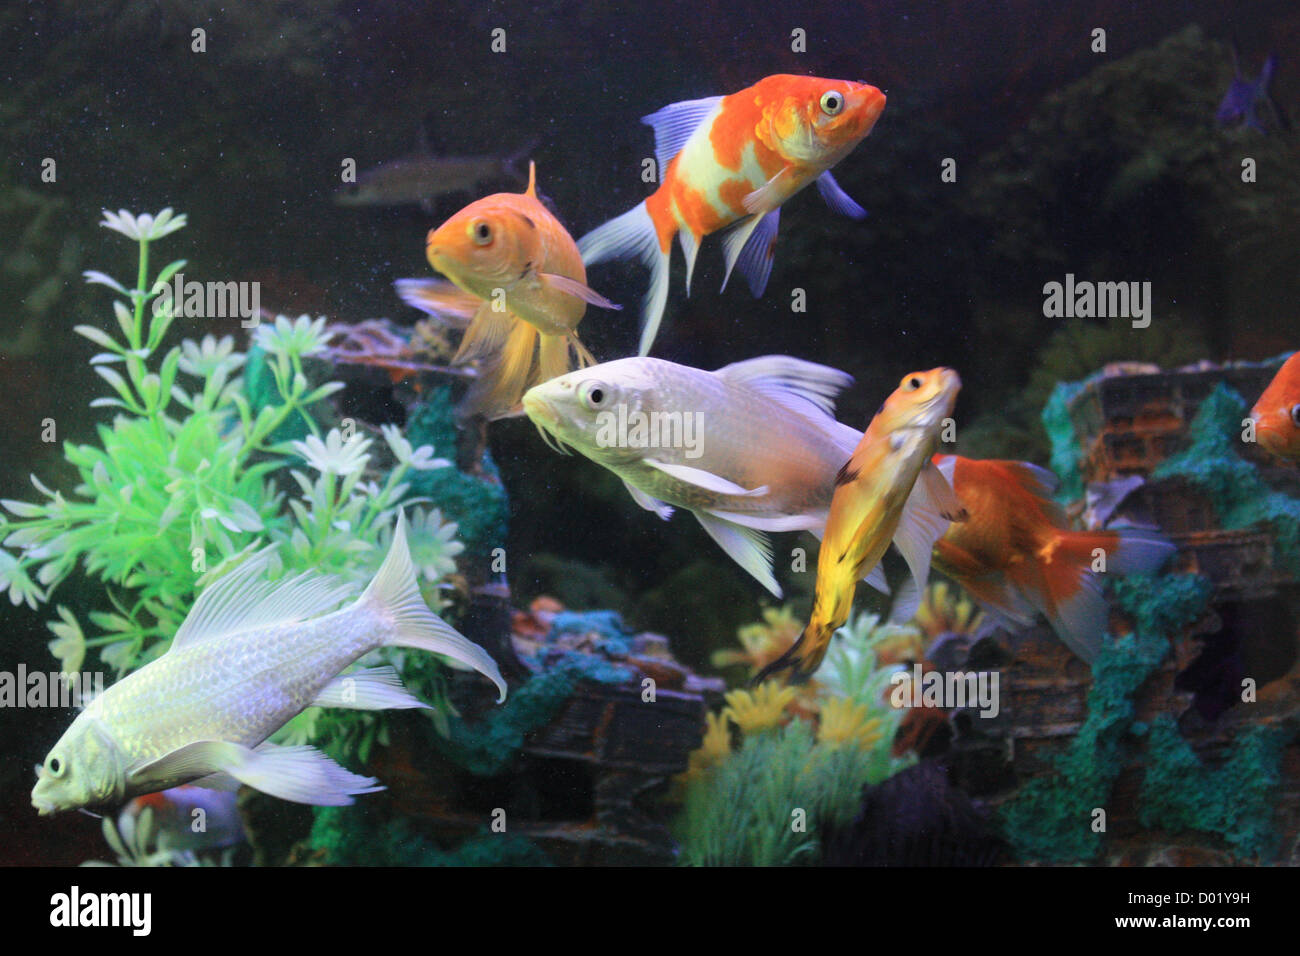 Acqua salata pesci immagini e fotografie stock ad alta risoluzione - Alamy